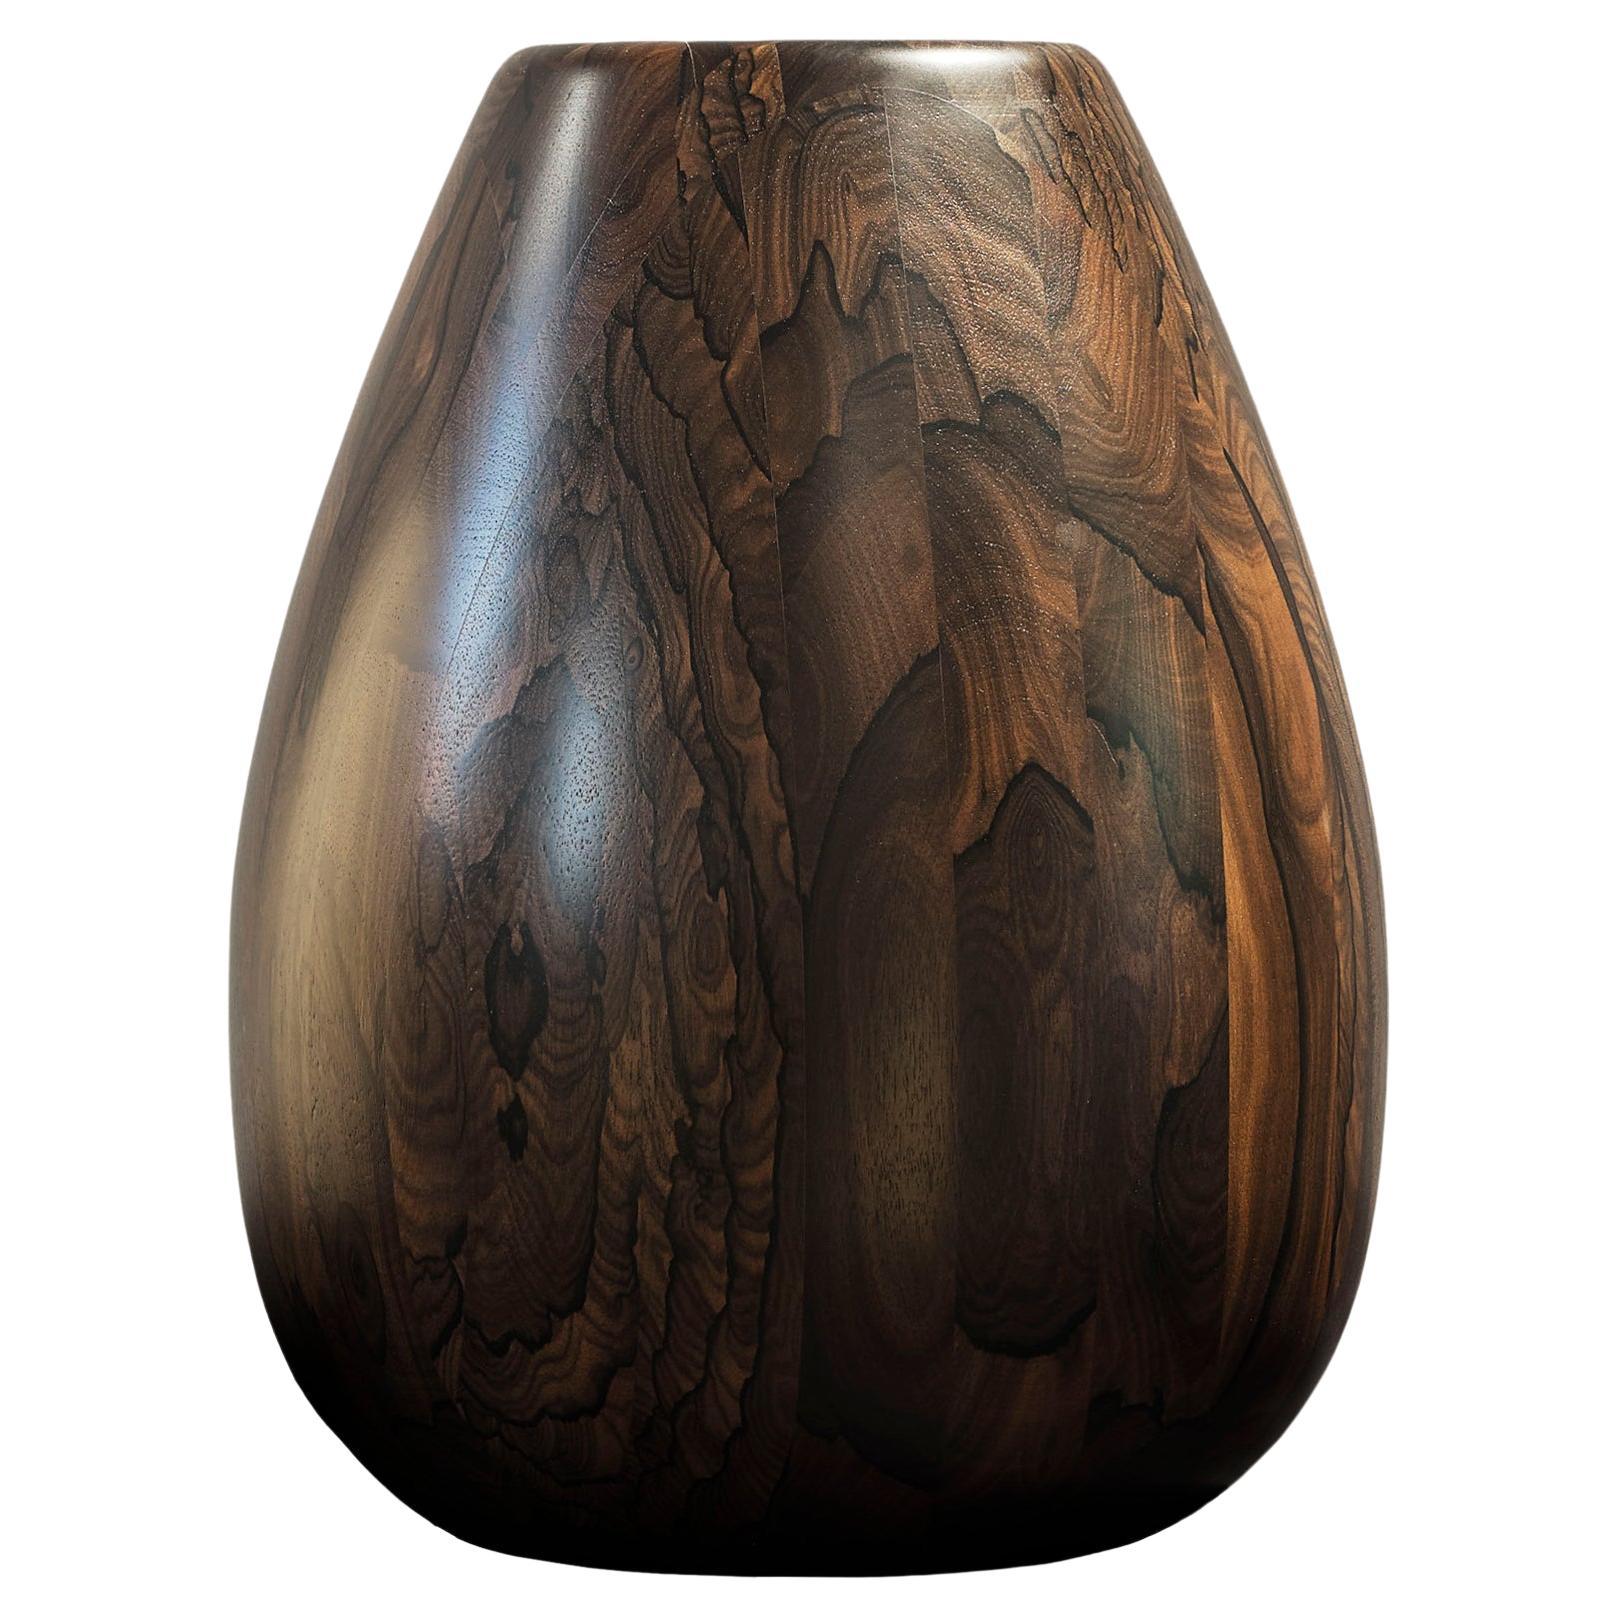 Ziricote Wood Vase h25 design Franco Albini - edit b Officina della Scala